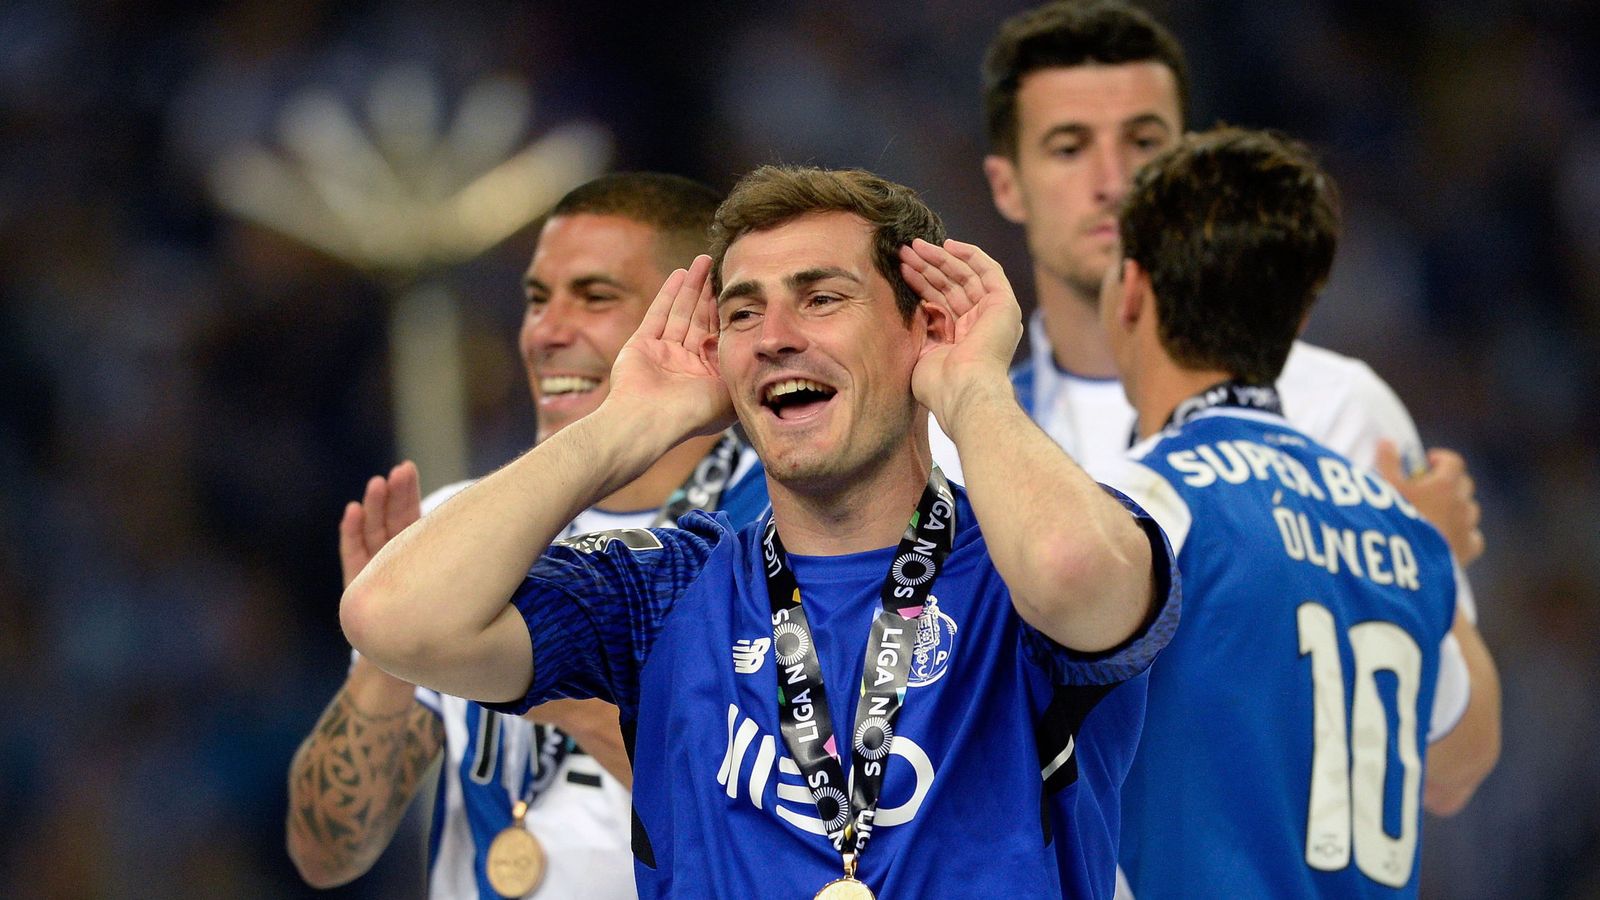 Foto: Iker Casillas, sonriente, en la fiesta de celebración del título de Liga del Oporto ante los aficionados que le aclaman. (EFE)